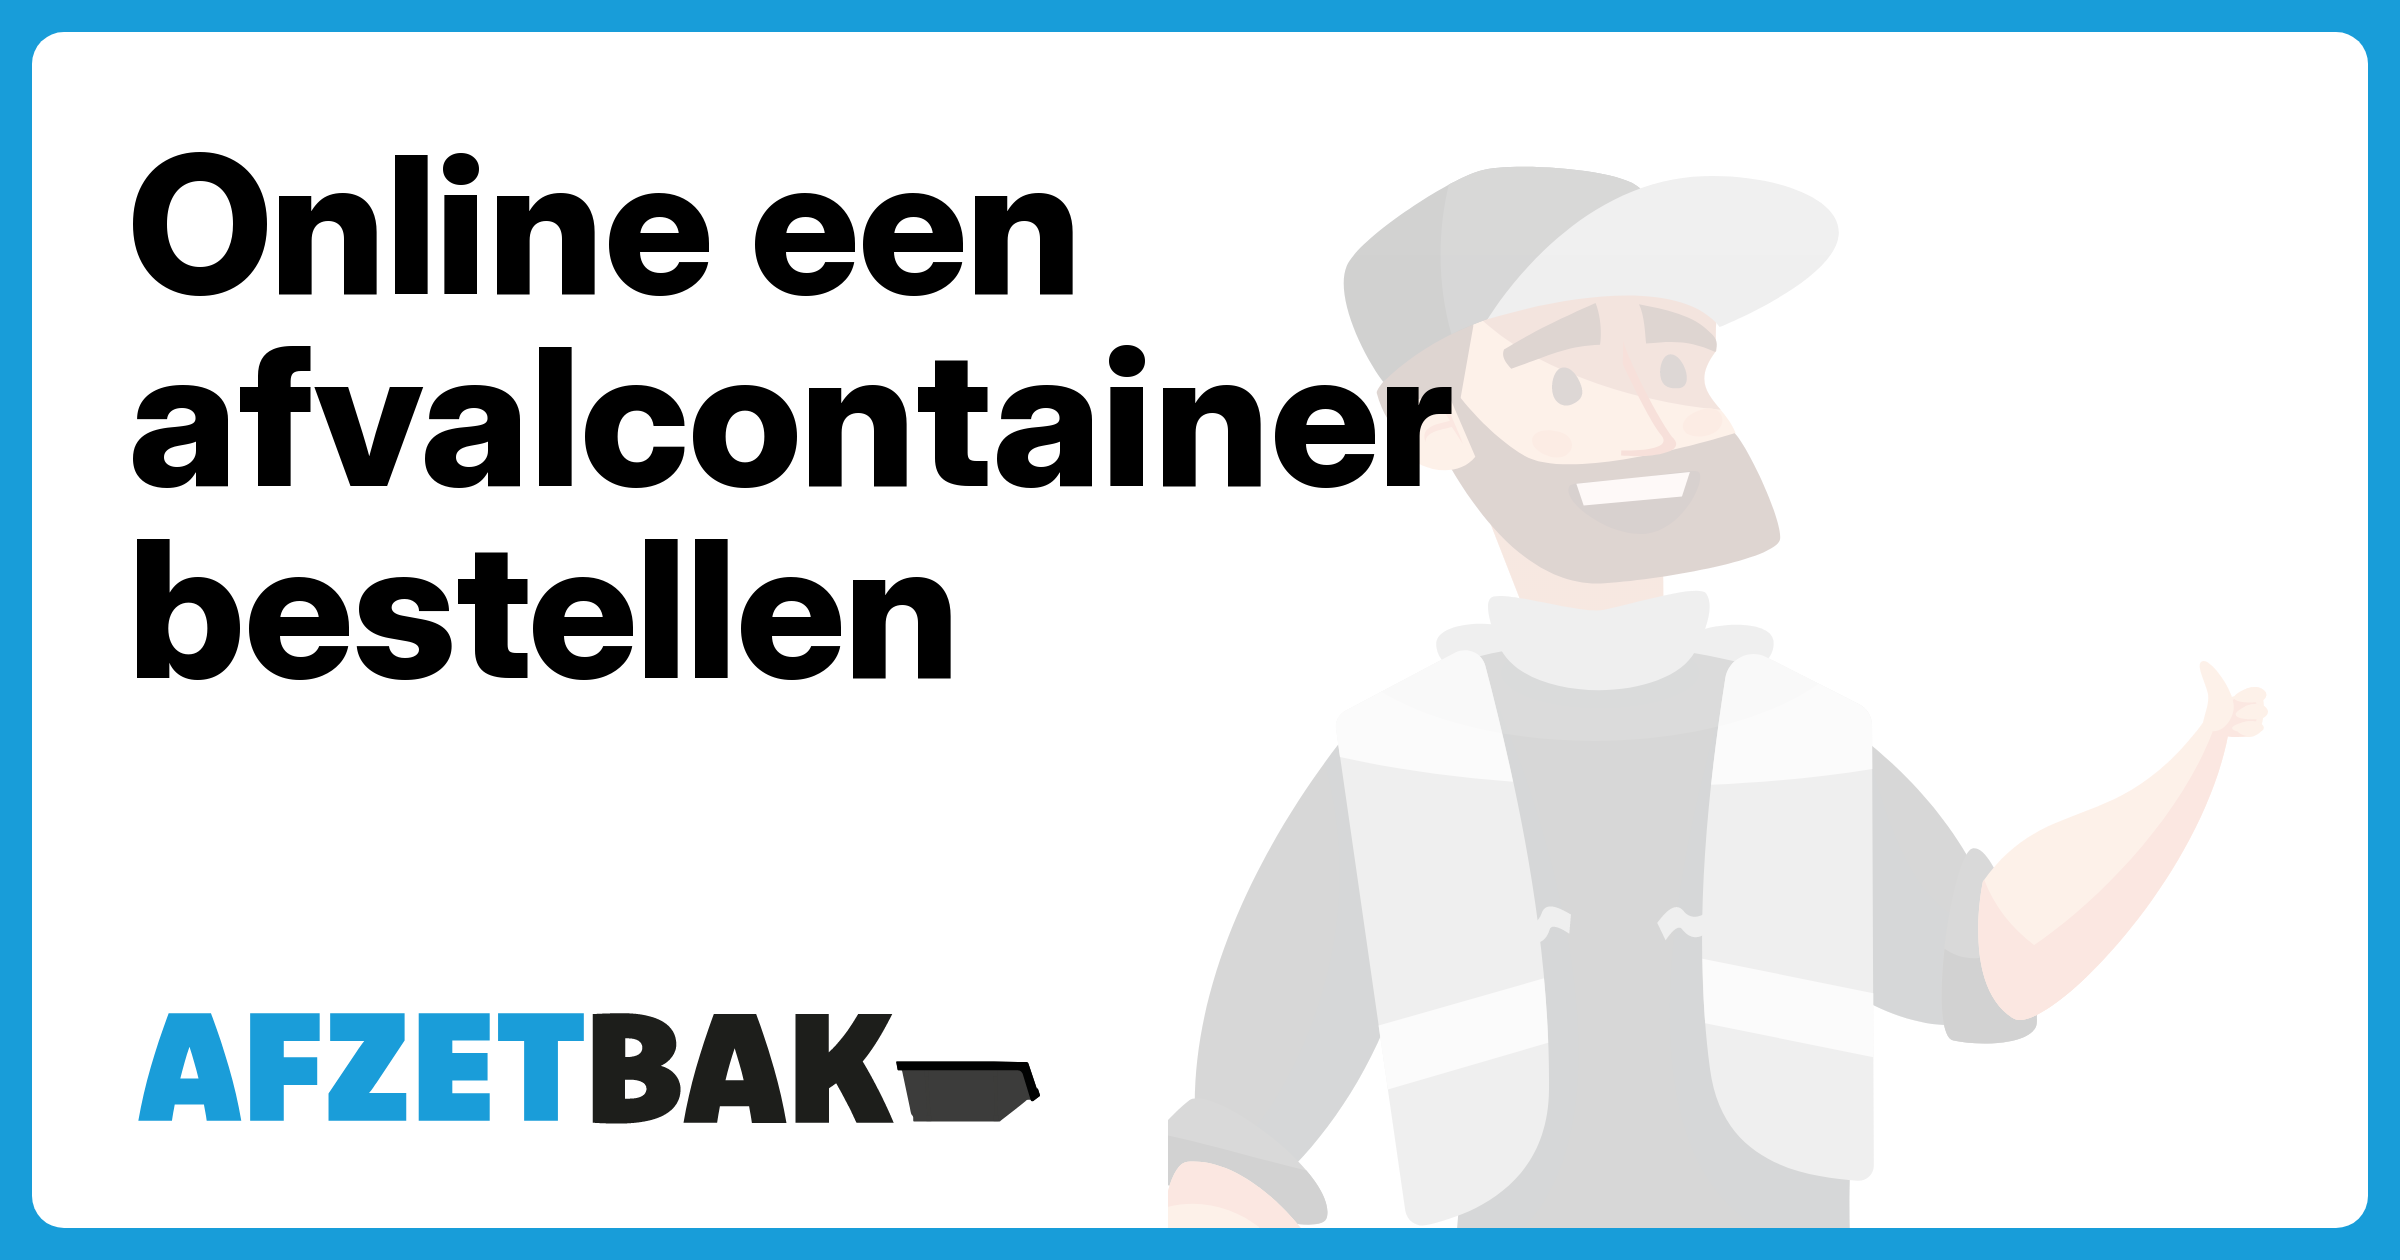 Online een afvalcontainer bestellen - Afzetbak.nl